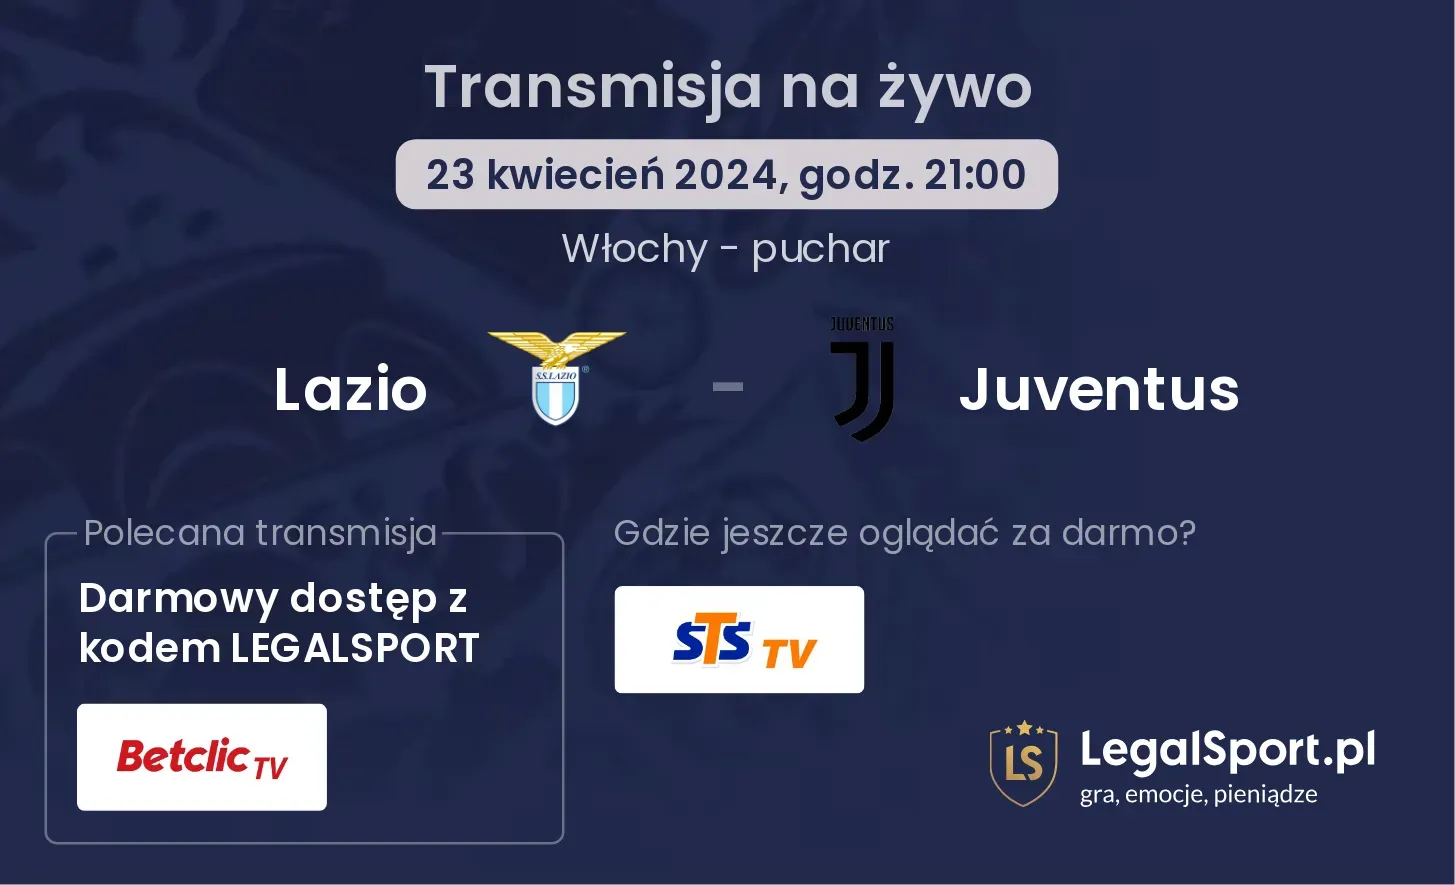 Lazio - Juventus transmisja na żywo